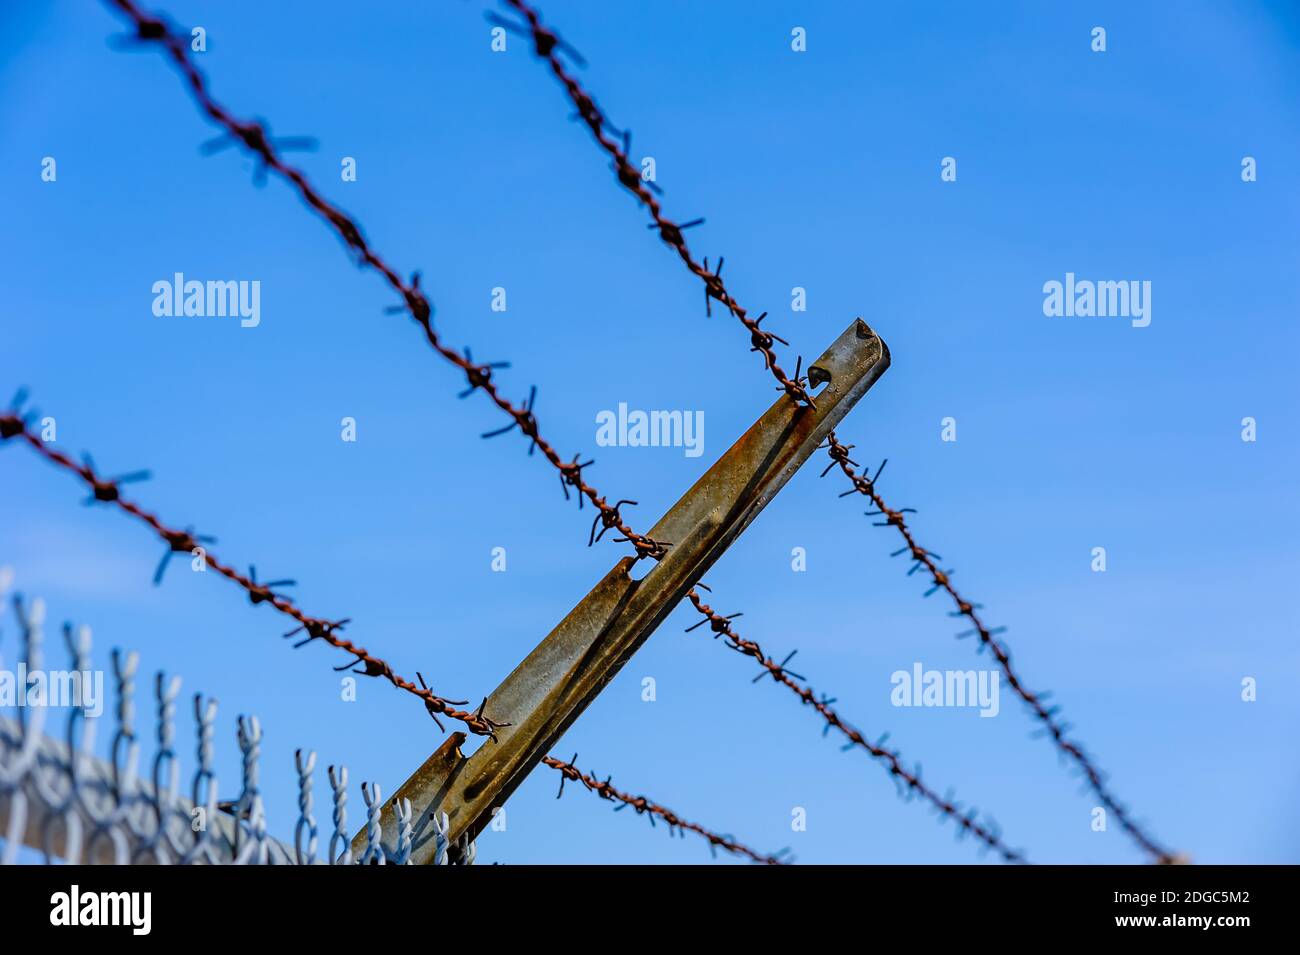 Concentrez-vous sur une partie de la clôture en fil métallique rouillé contre le ciel bleu. Banque D'Images